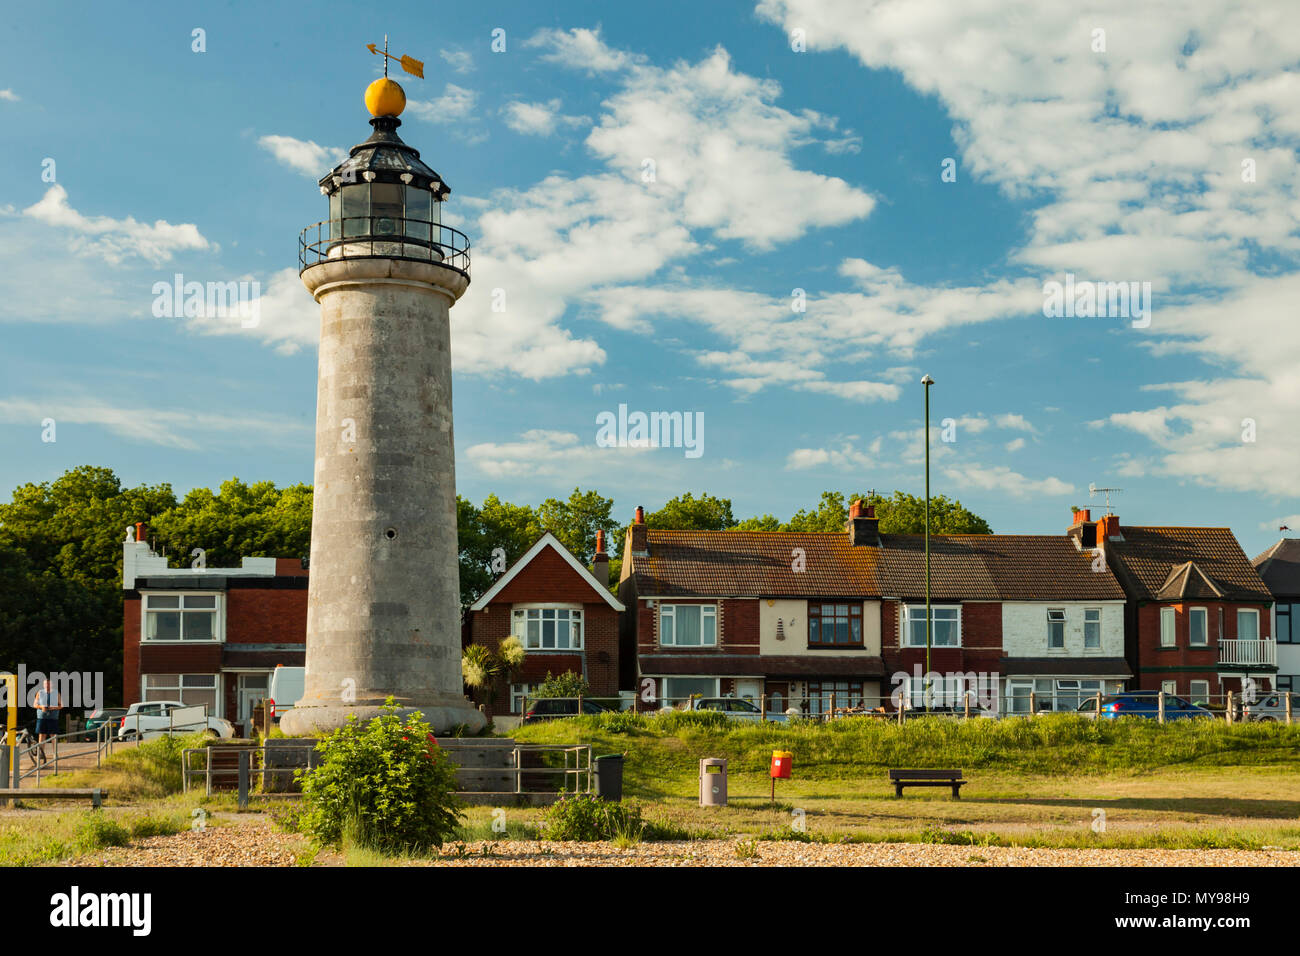 Soirée d'été à Kingston dans le phare de Shoreham-by-Sea, West Sussex, Angleterre. Banque D'Images